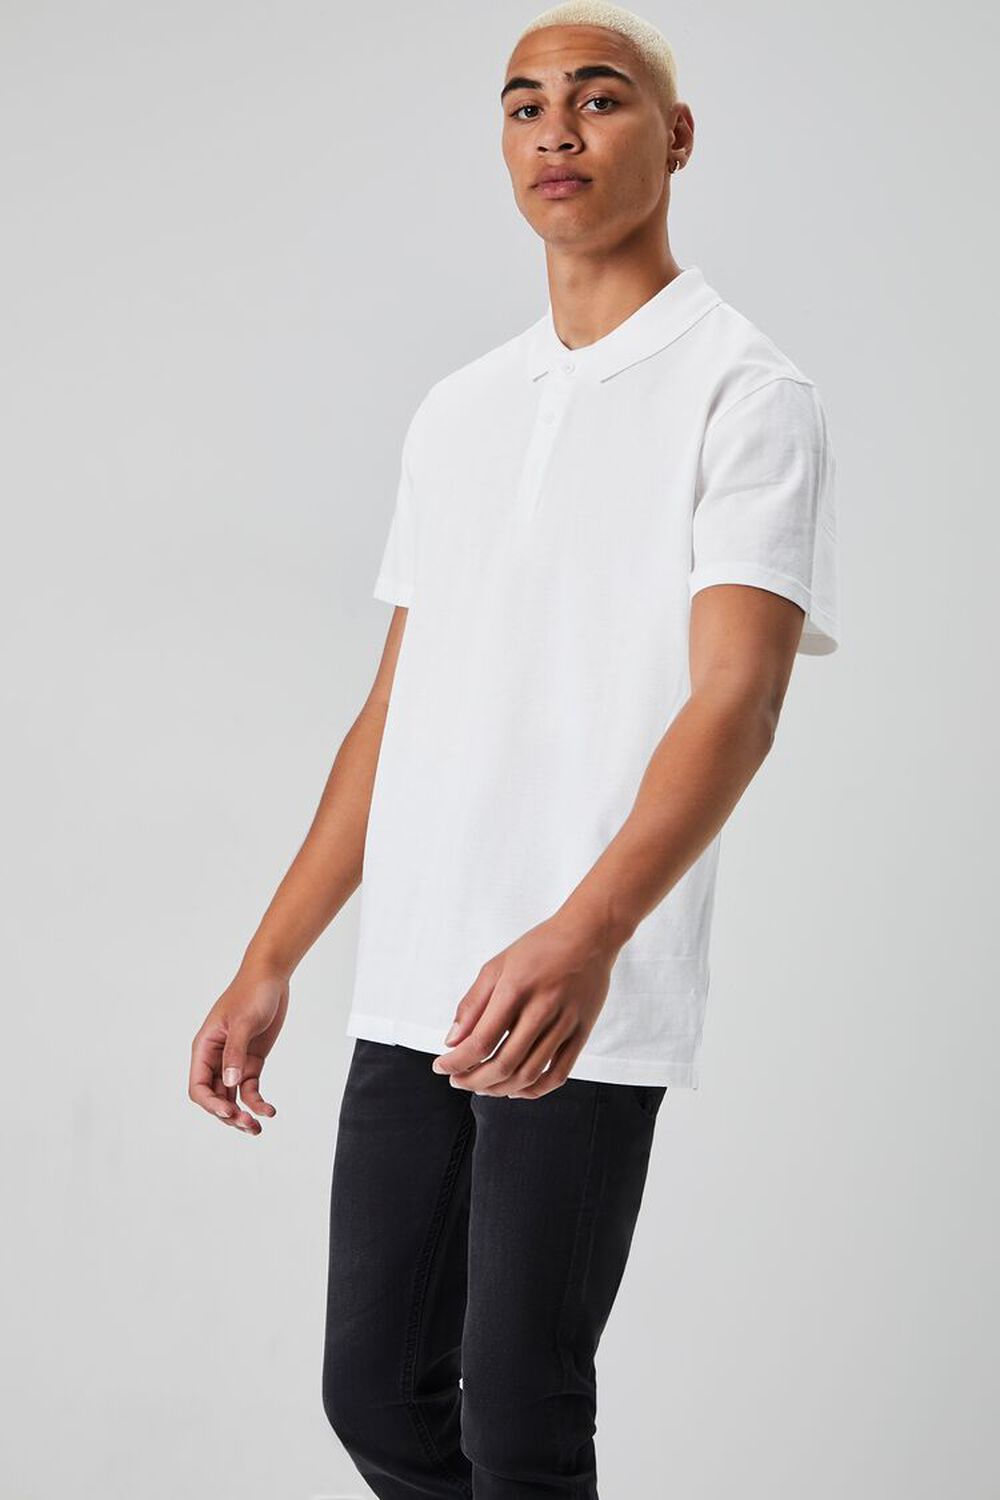 WHITE Short-Sleeve Polo Shirt, image 1